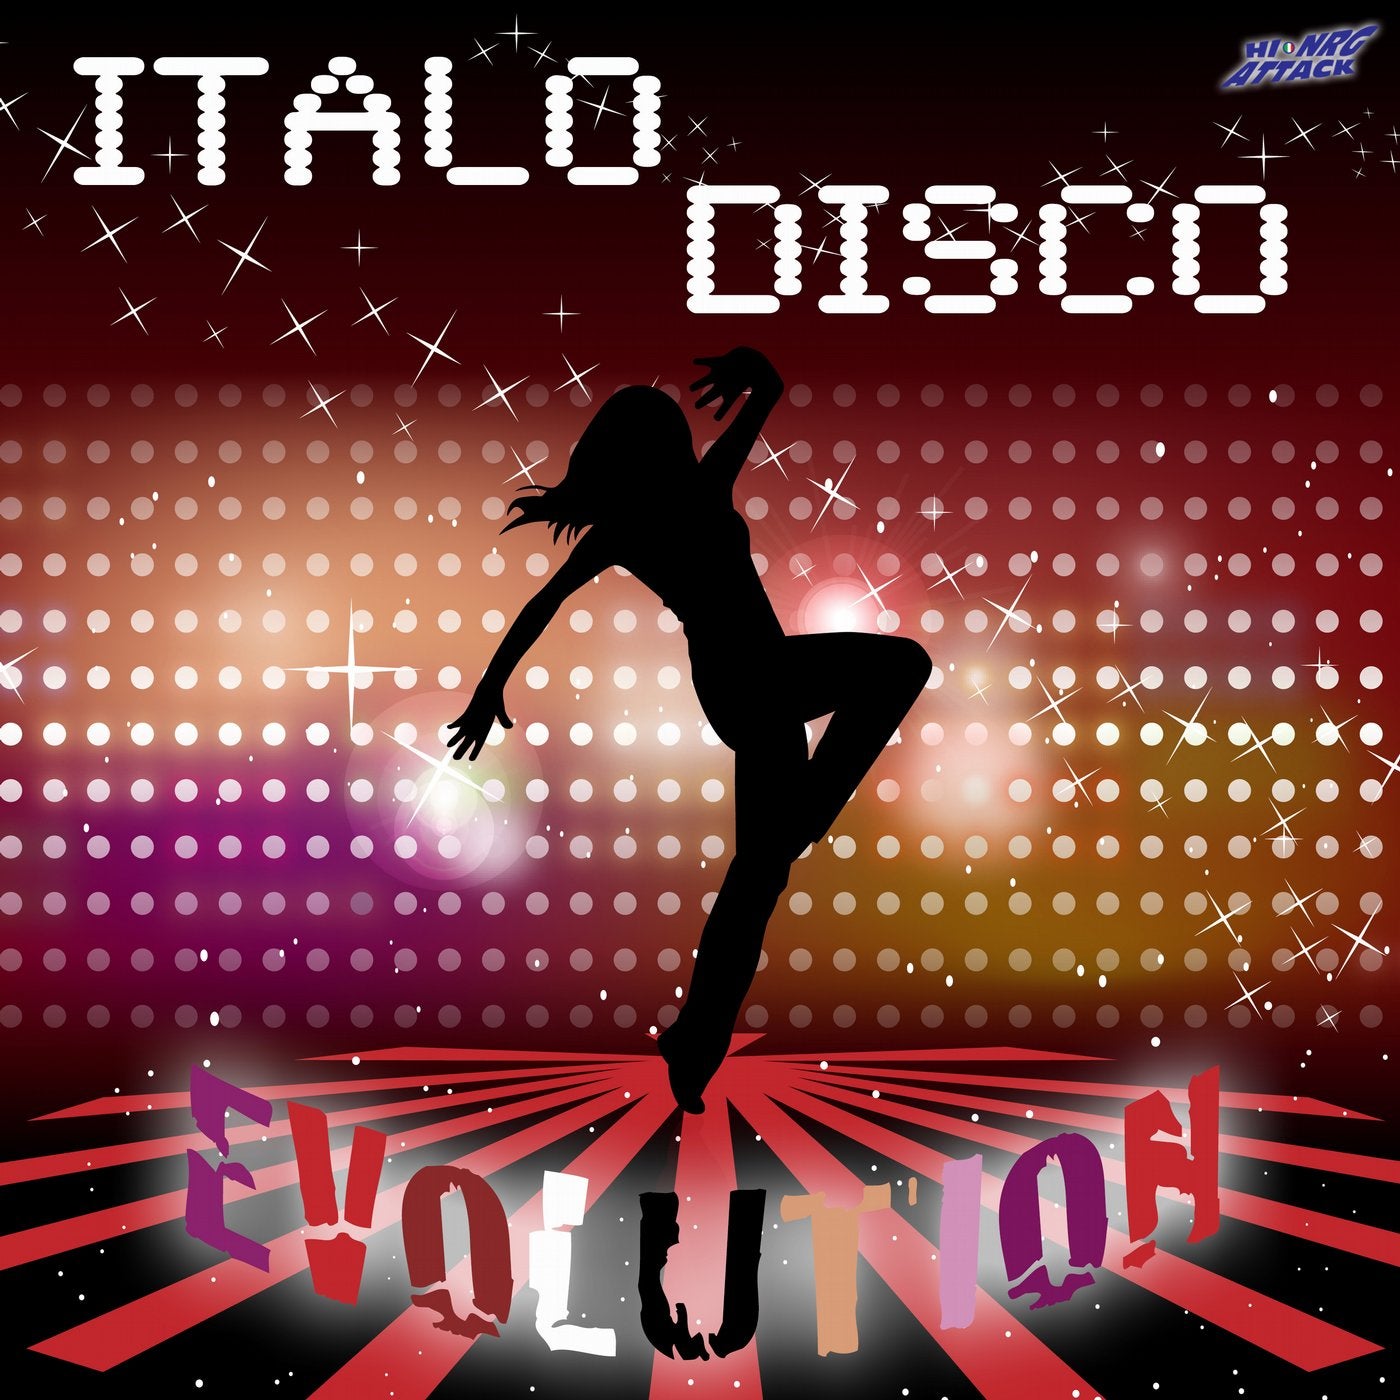 New italo music. Итало диско. Итало диско итало диско. Диско танцы. Disco обложка.